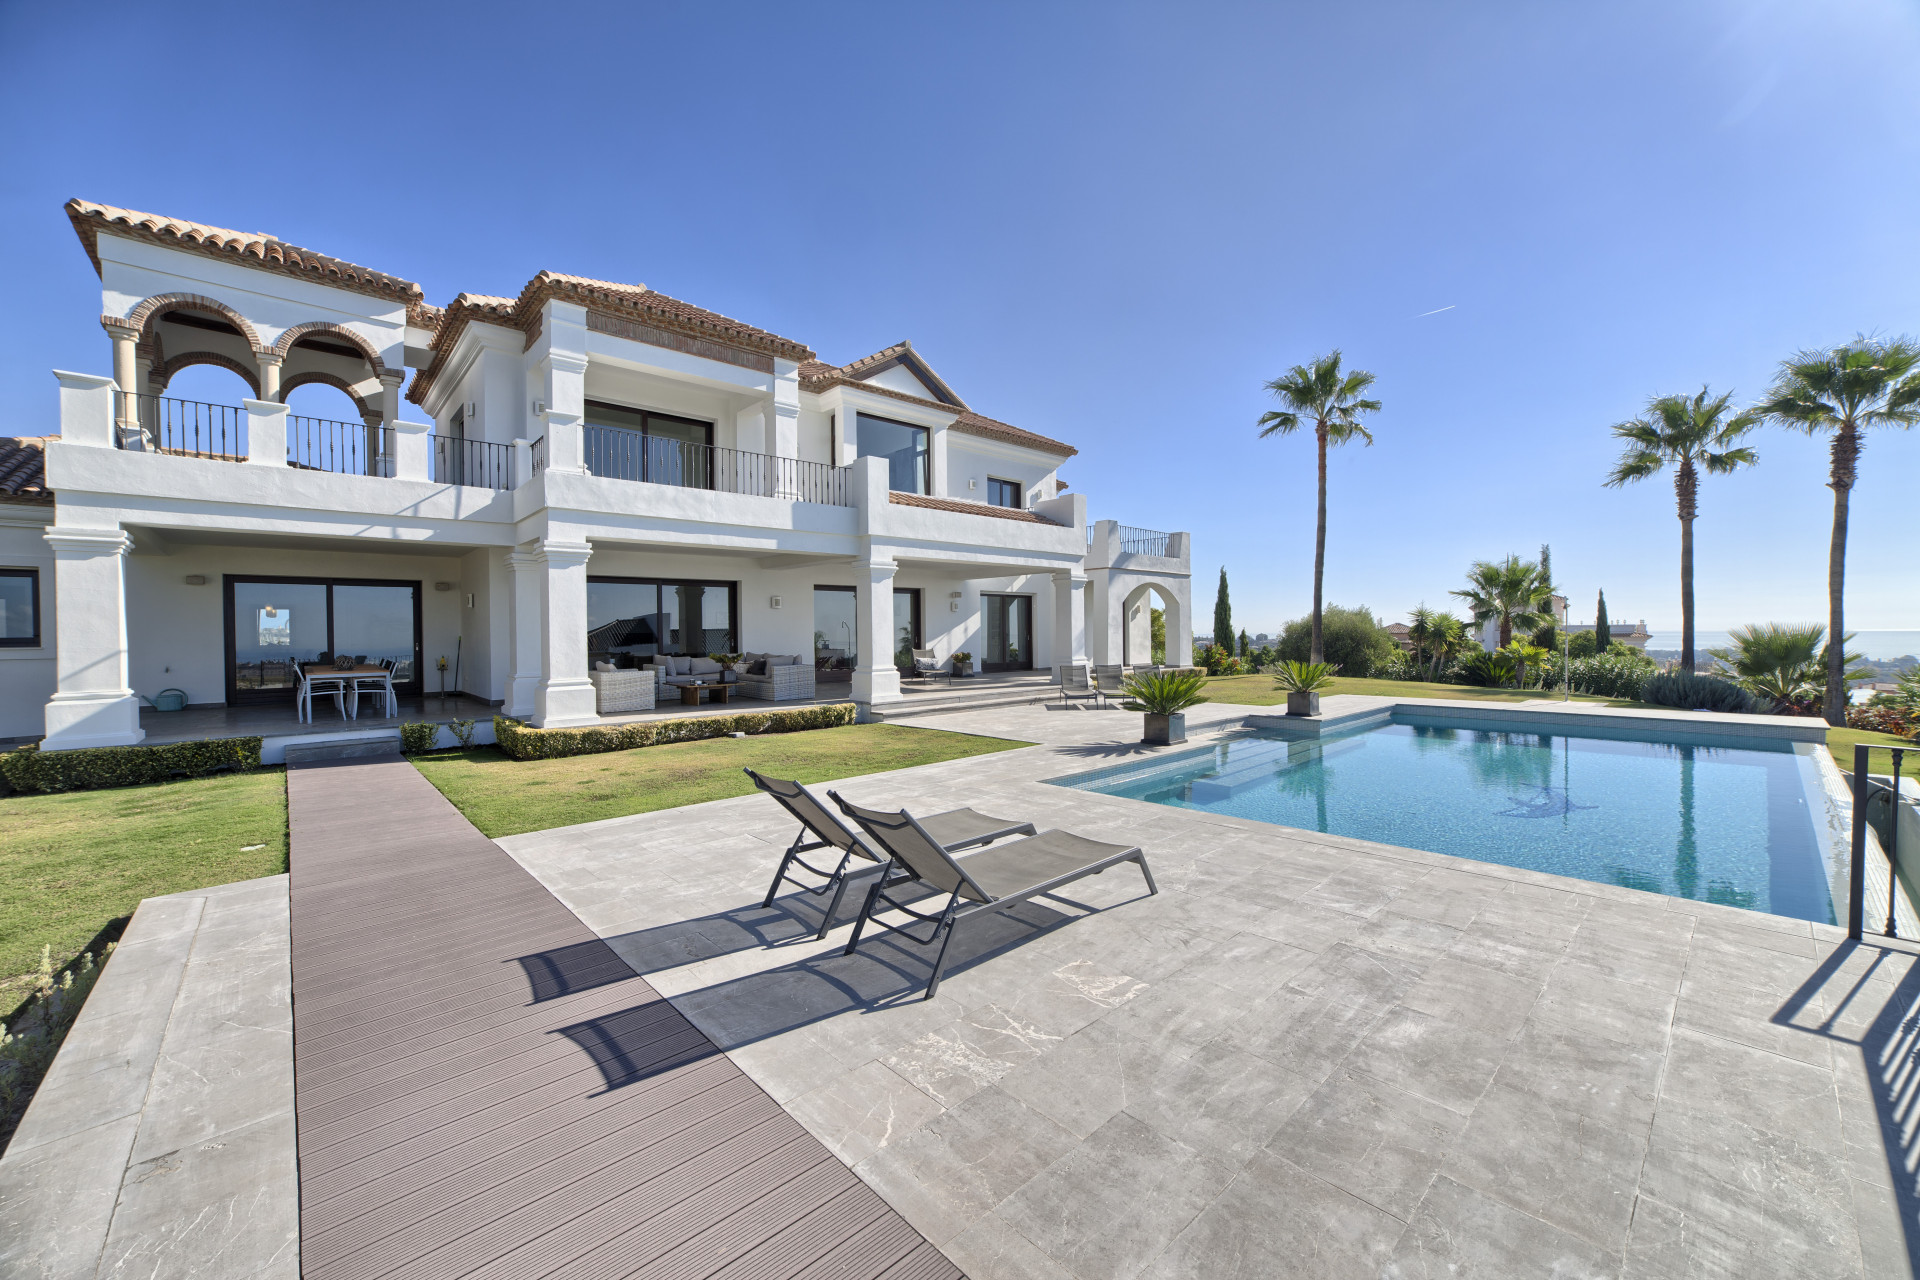 Villa de alta calidad construida con los más altos estándares situada en Los Flamingos Golf Resort, Benahavís.